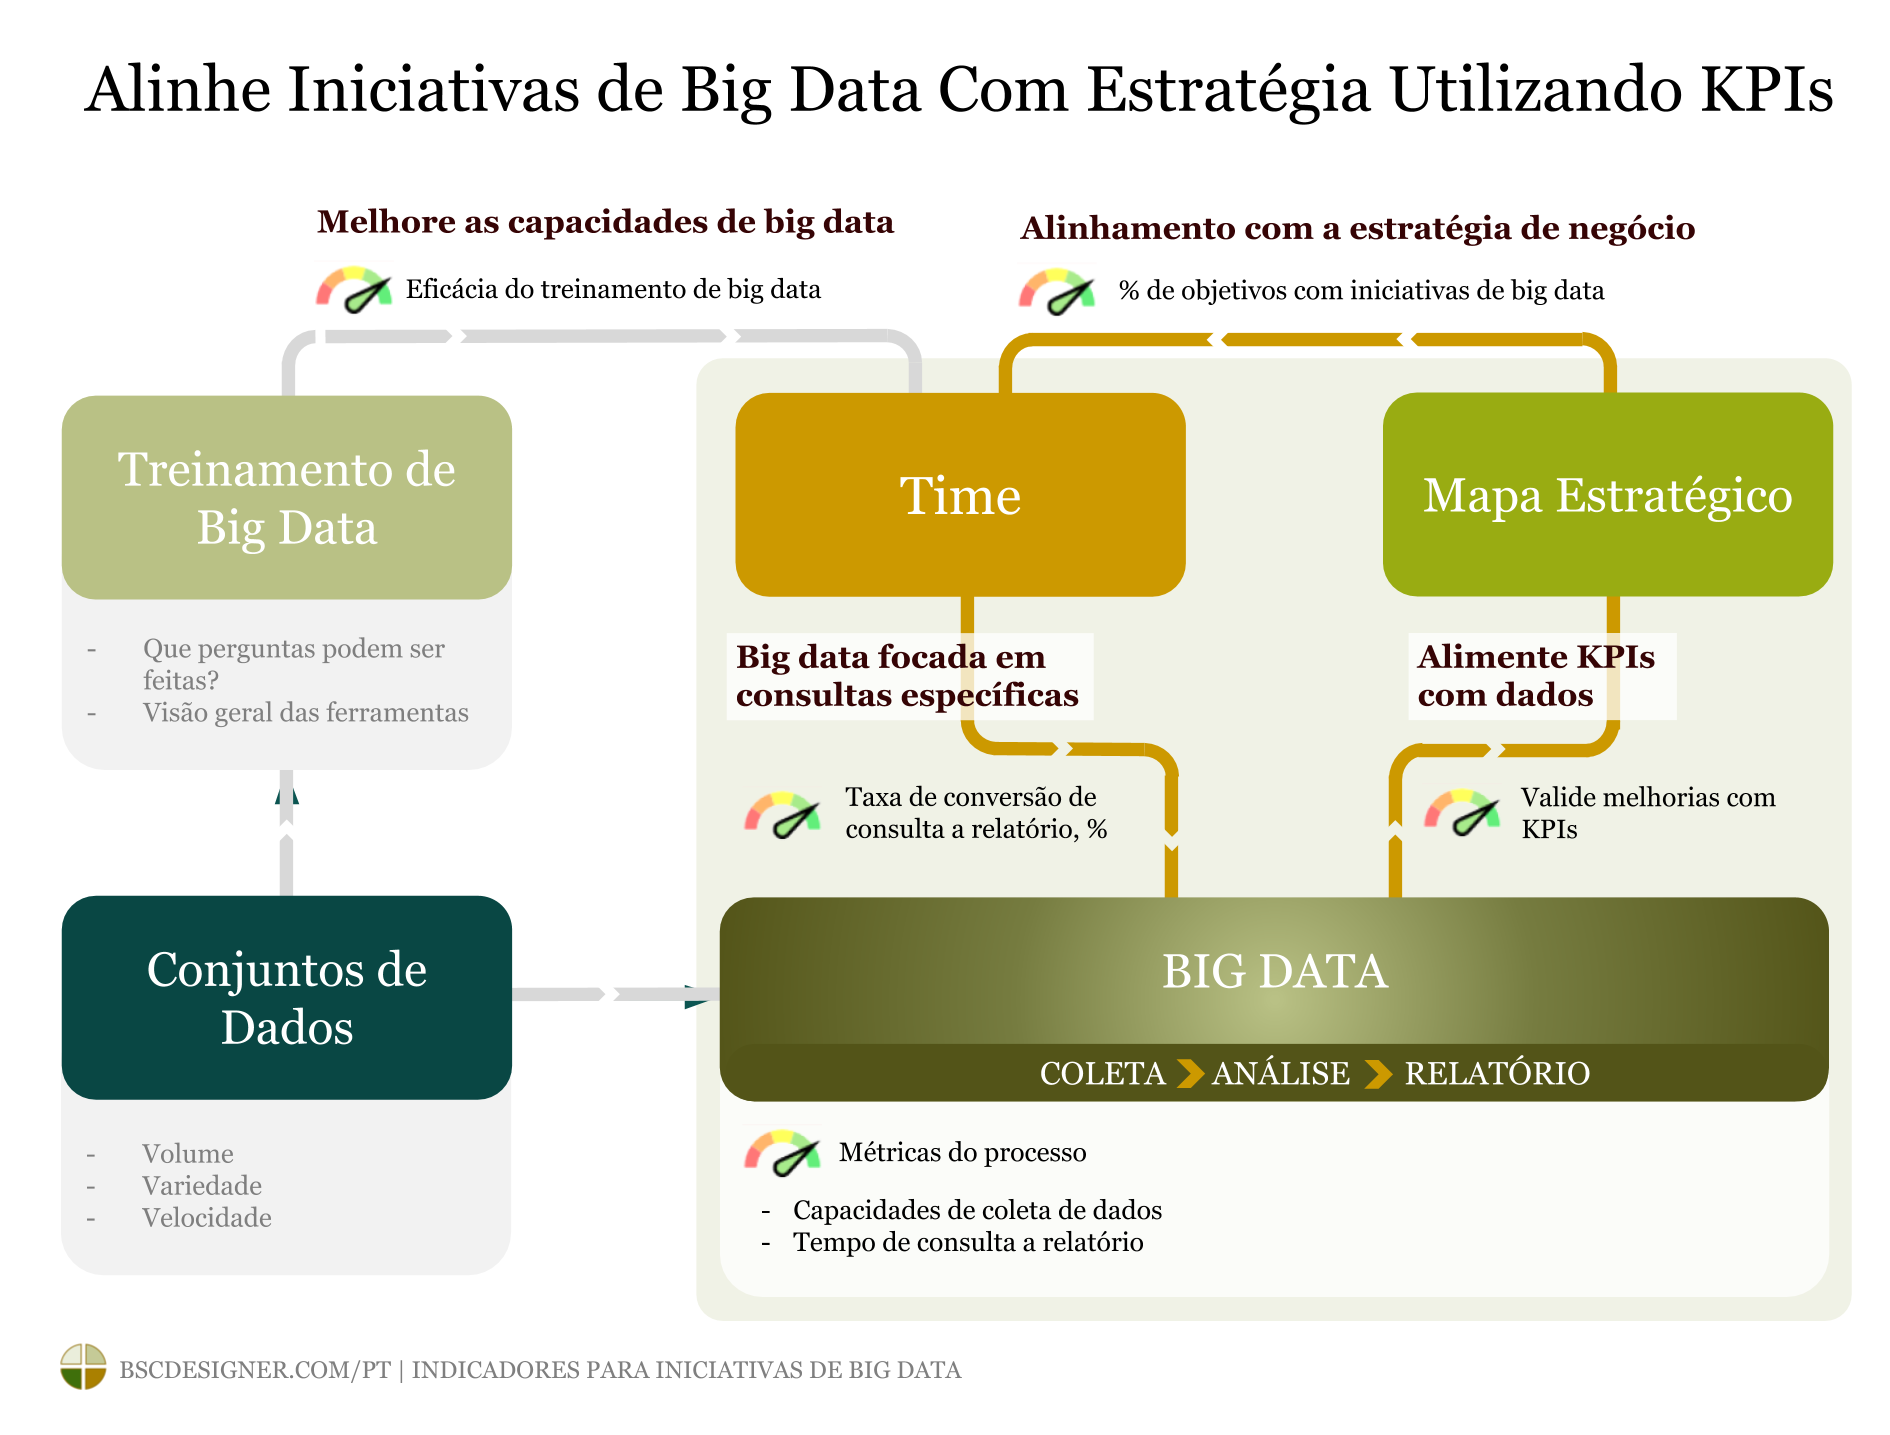 Alinhar Iniciativas de Big Data com a Estratégia Utilizando KPIs